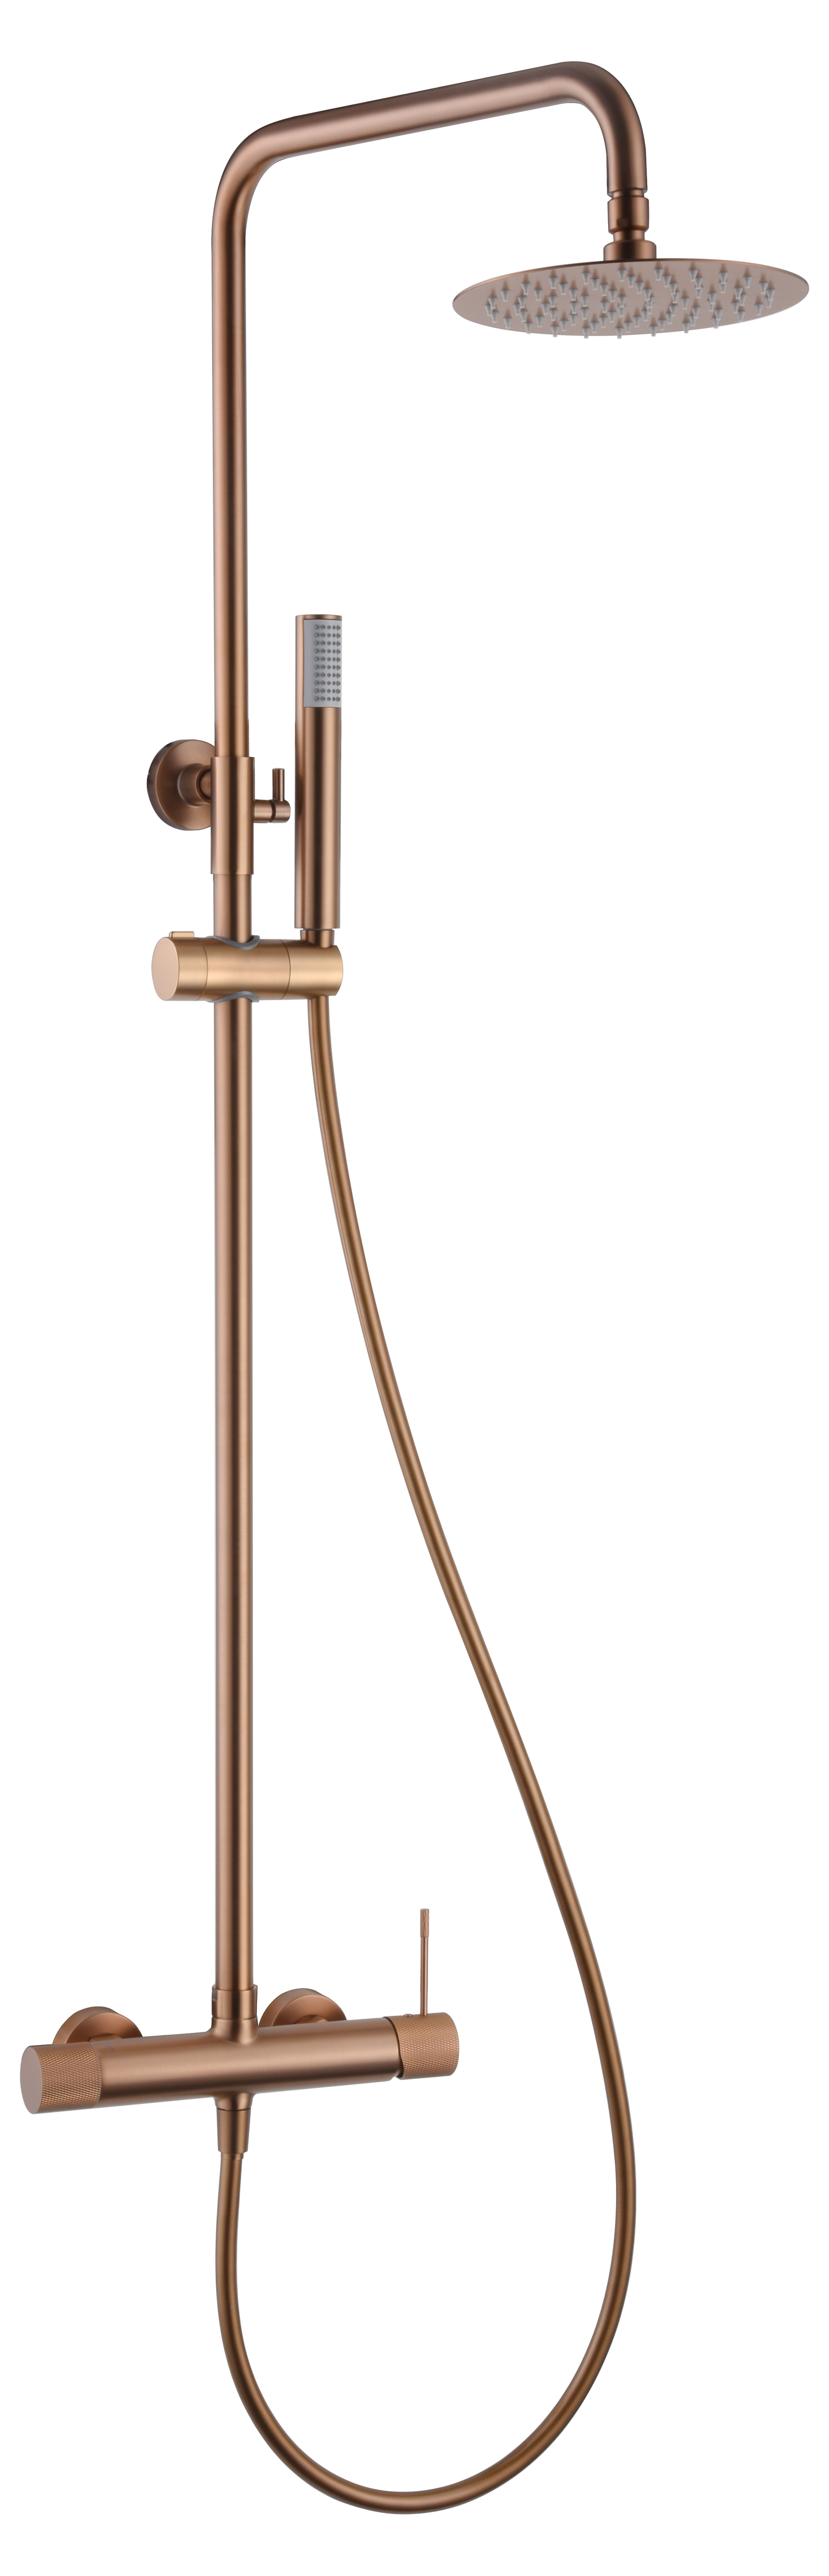 Imex Line brushed rose gold single-lever shower bar taps